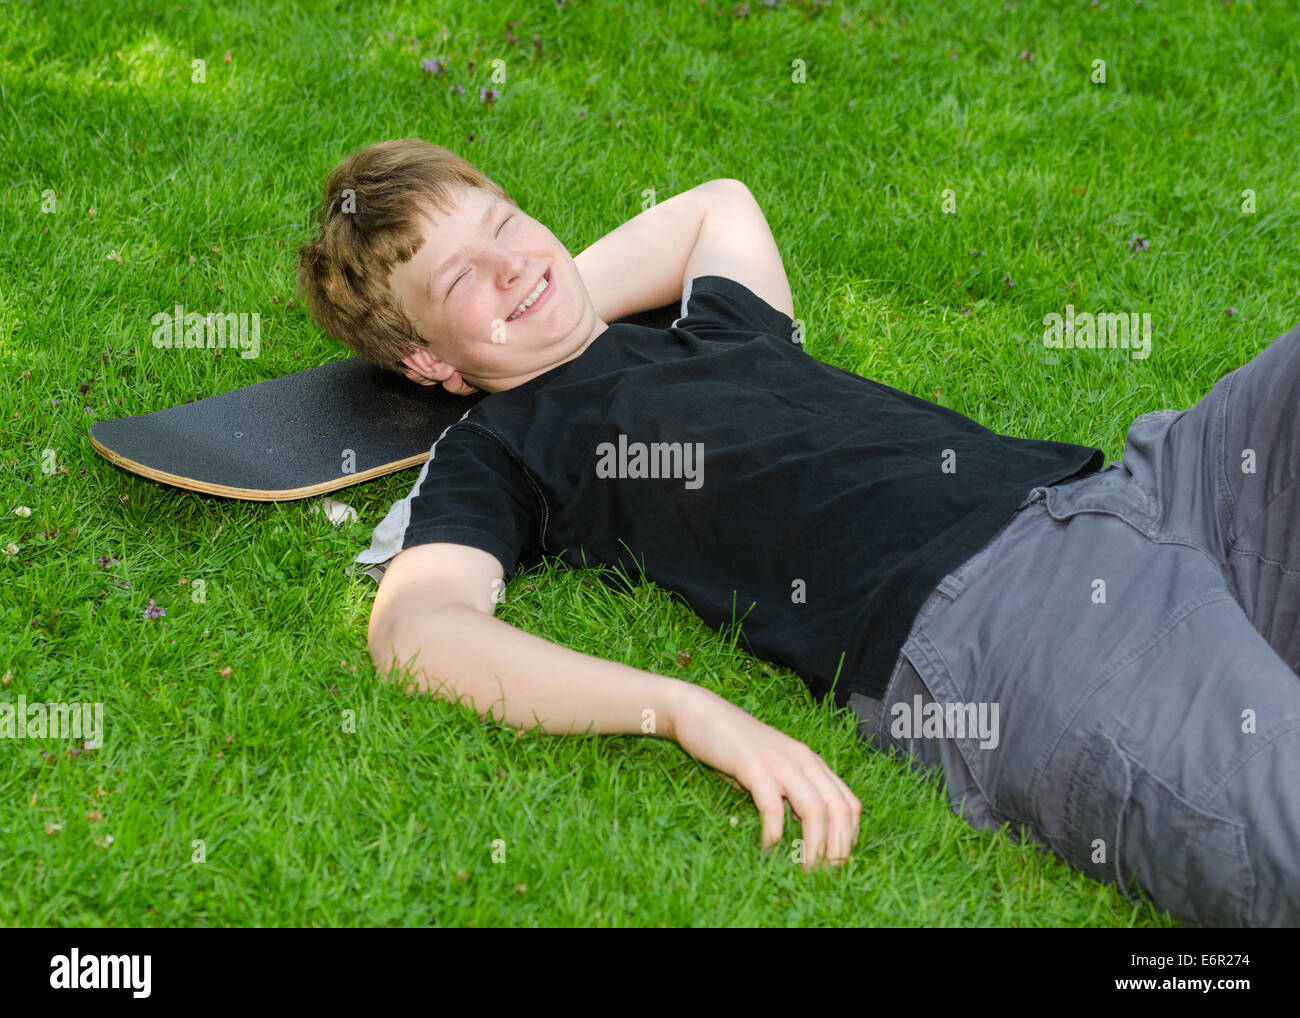 Laughing guy relajarse en monopatín en park hierba y descansar después de un ocio activo Foto de stock